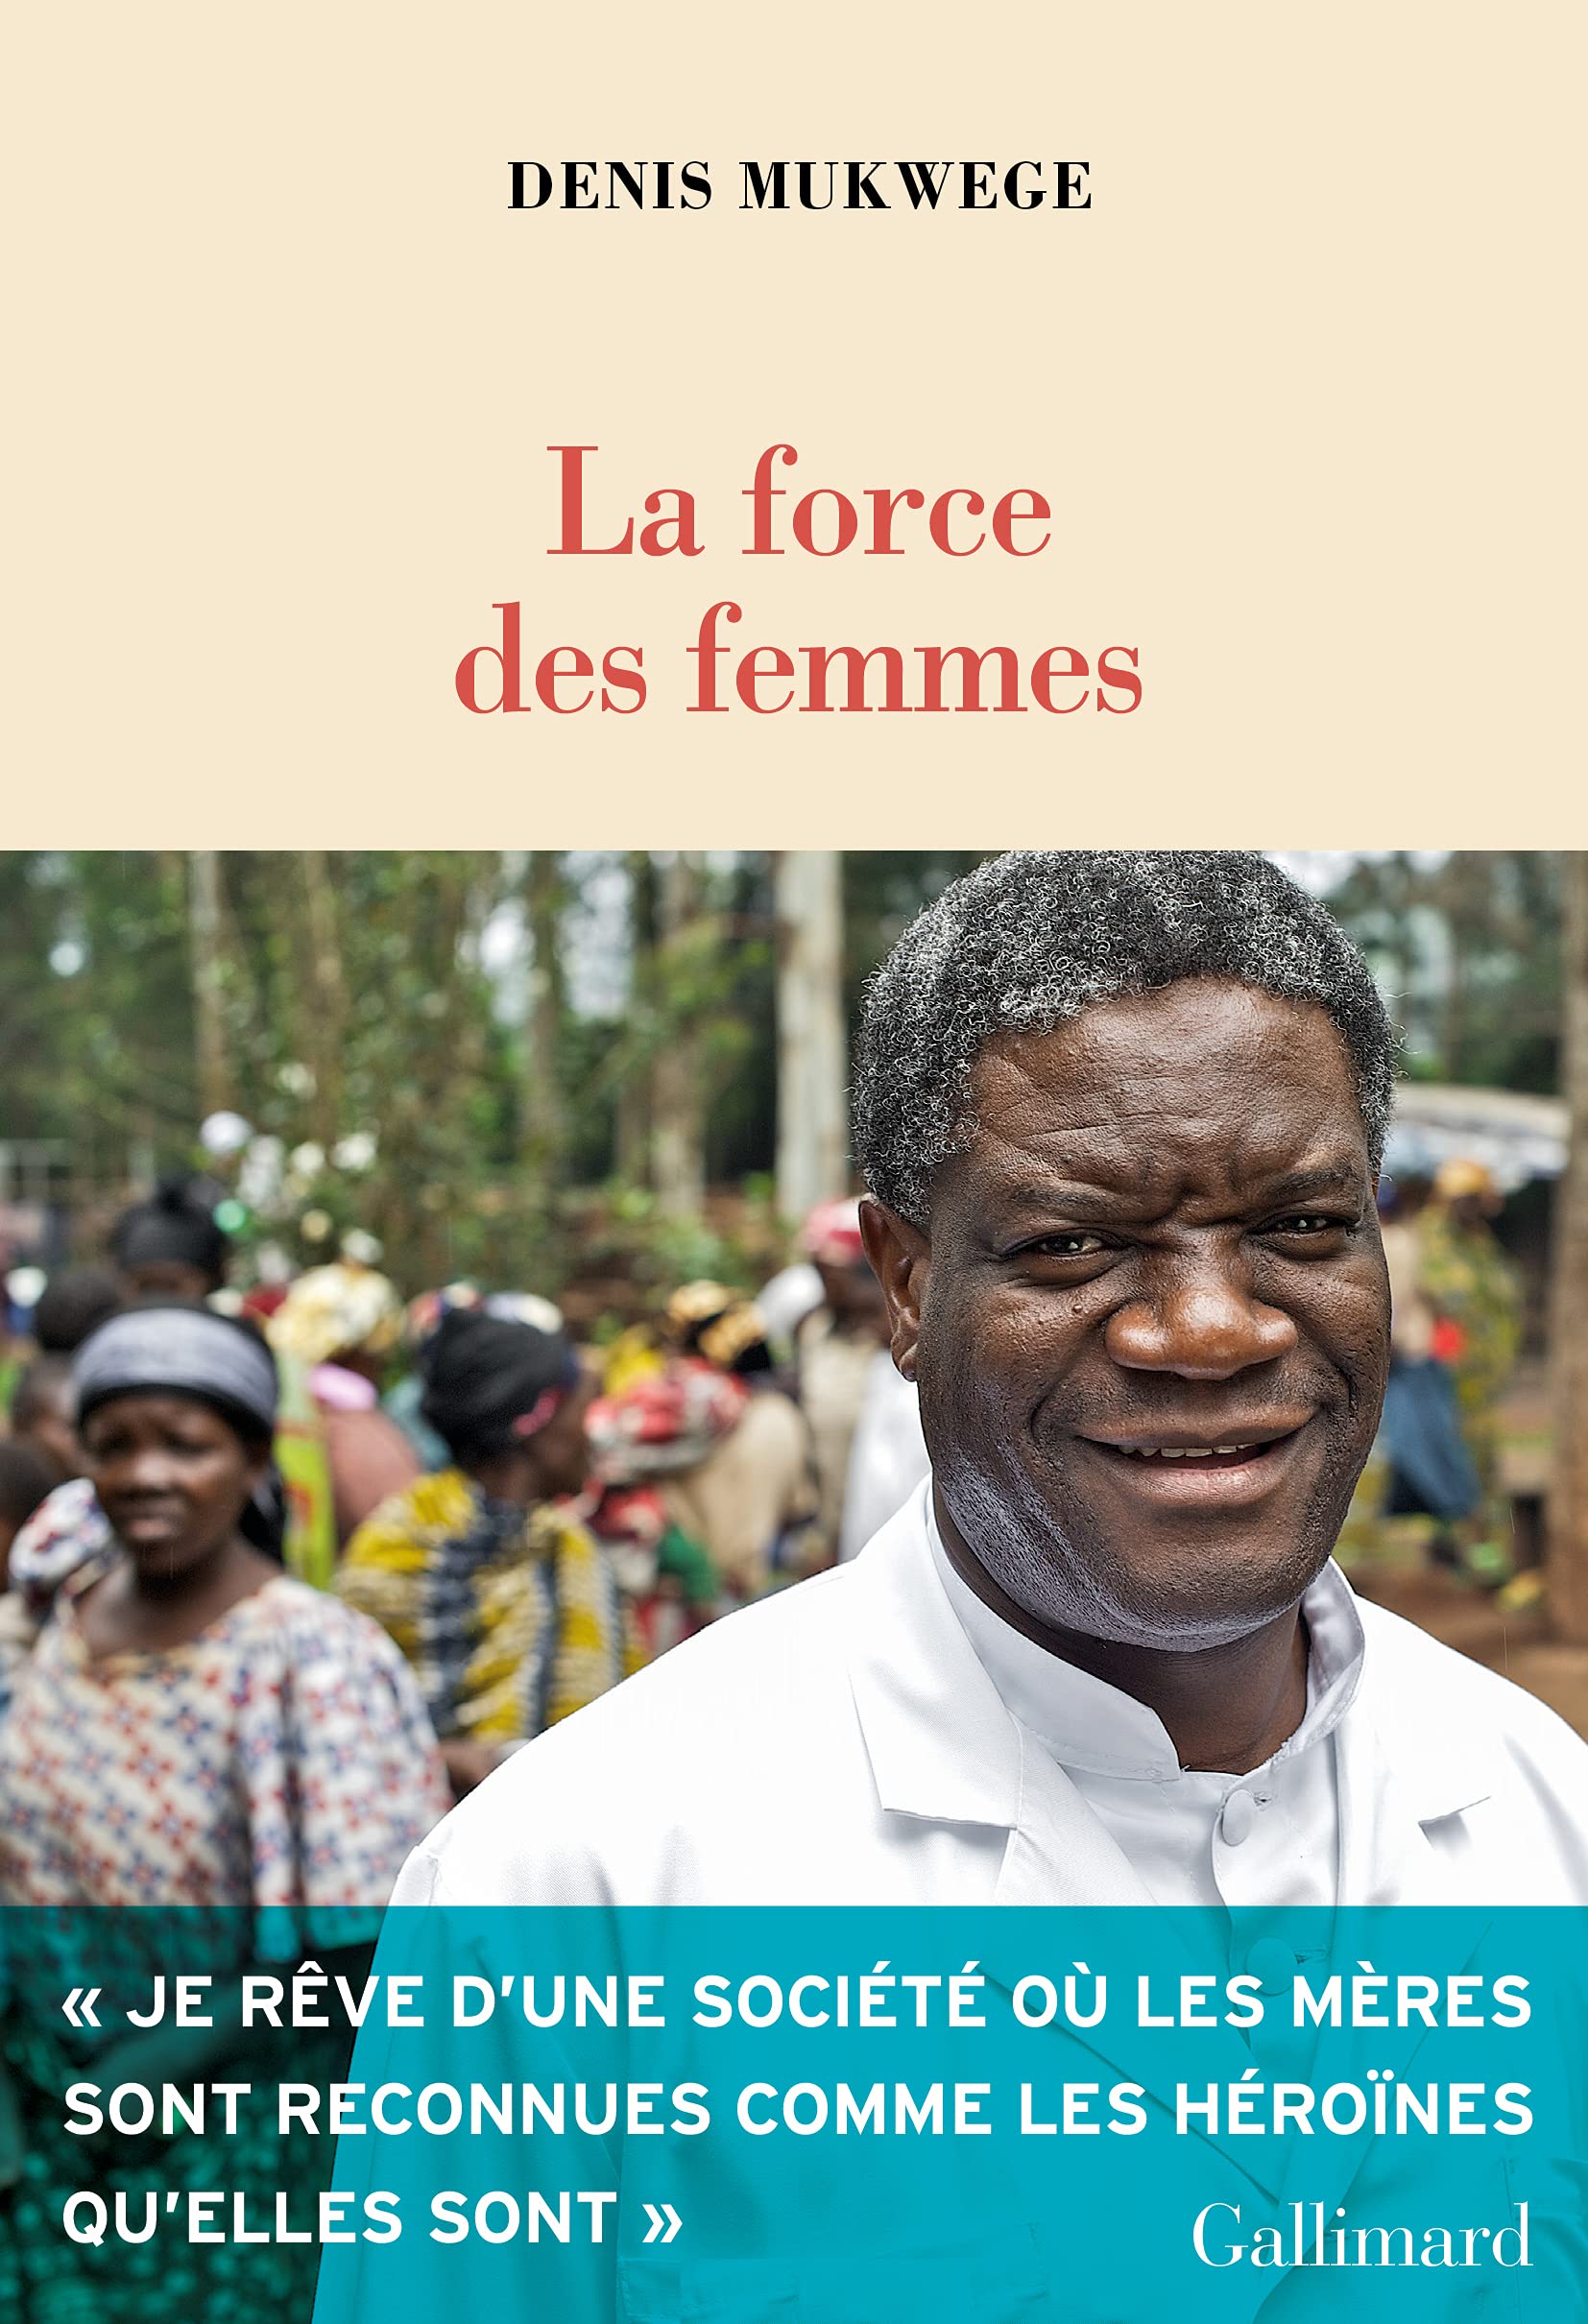 La force des femmes | Denis Mukwege image21